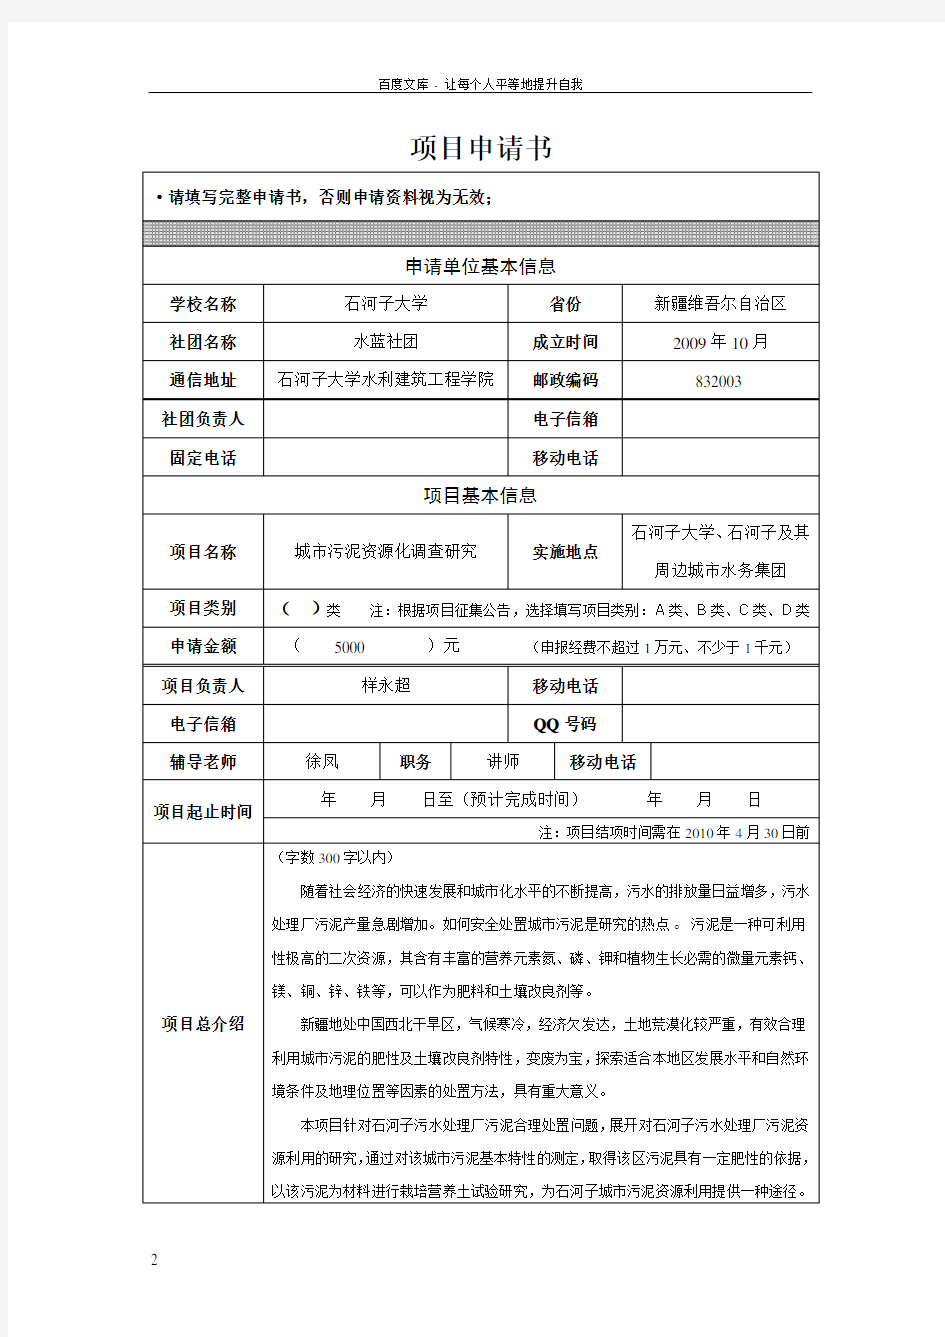 中华环保基金小额资助项目申请书6(徐凤)